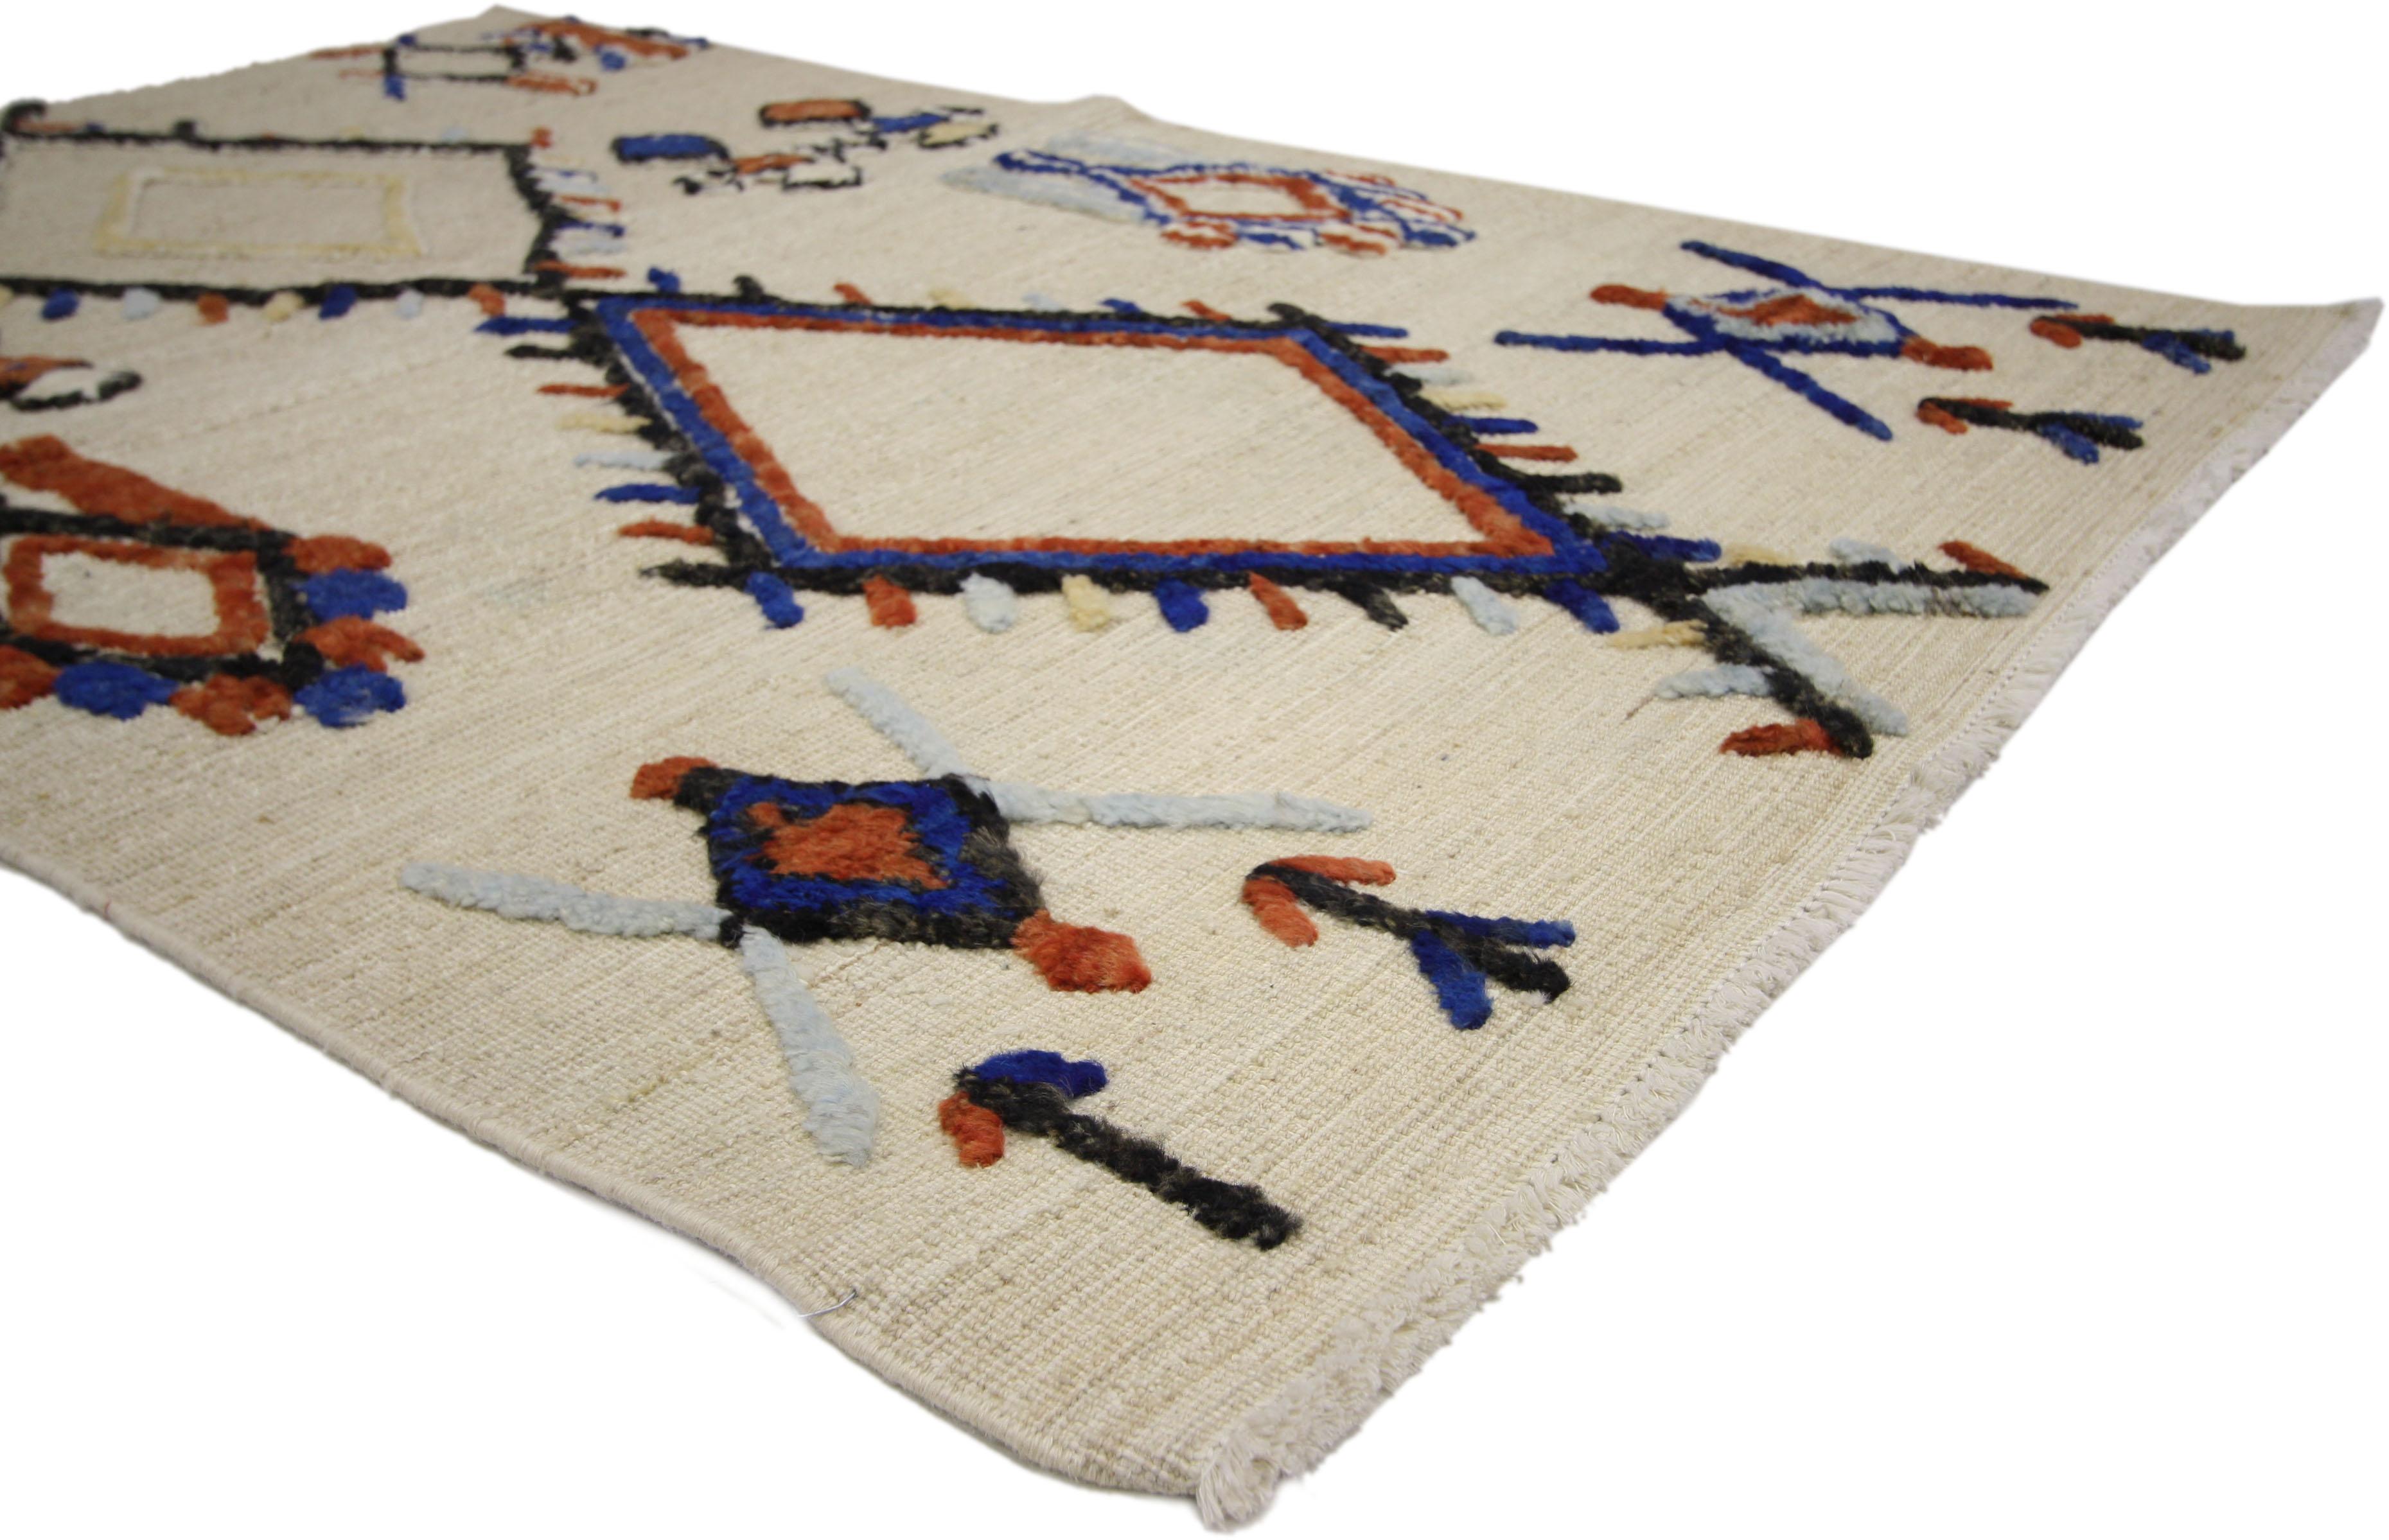 80274 Teppich im marokkanischen Stil mit Tribal-Stil, hohe und niedrige Textur Teppich. Dies ist ein fantastisches Beispiel für einen zweilagigen Teppich mit hoher und niedriger Textur im marokkanischen Stil, gewebt in einer sauberen und einfachen,